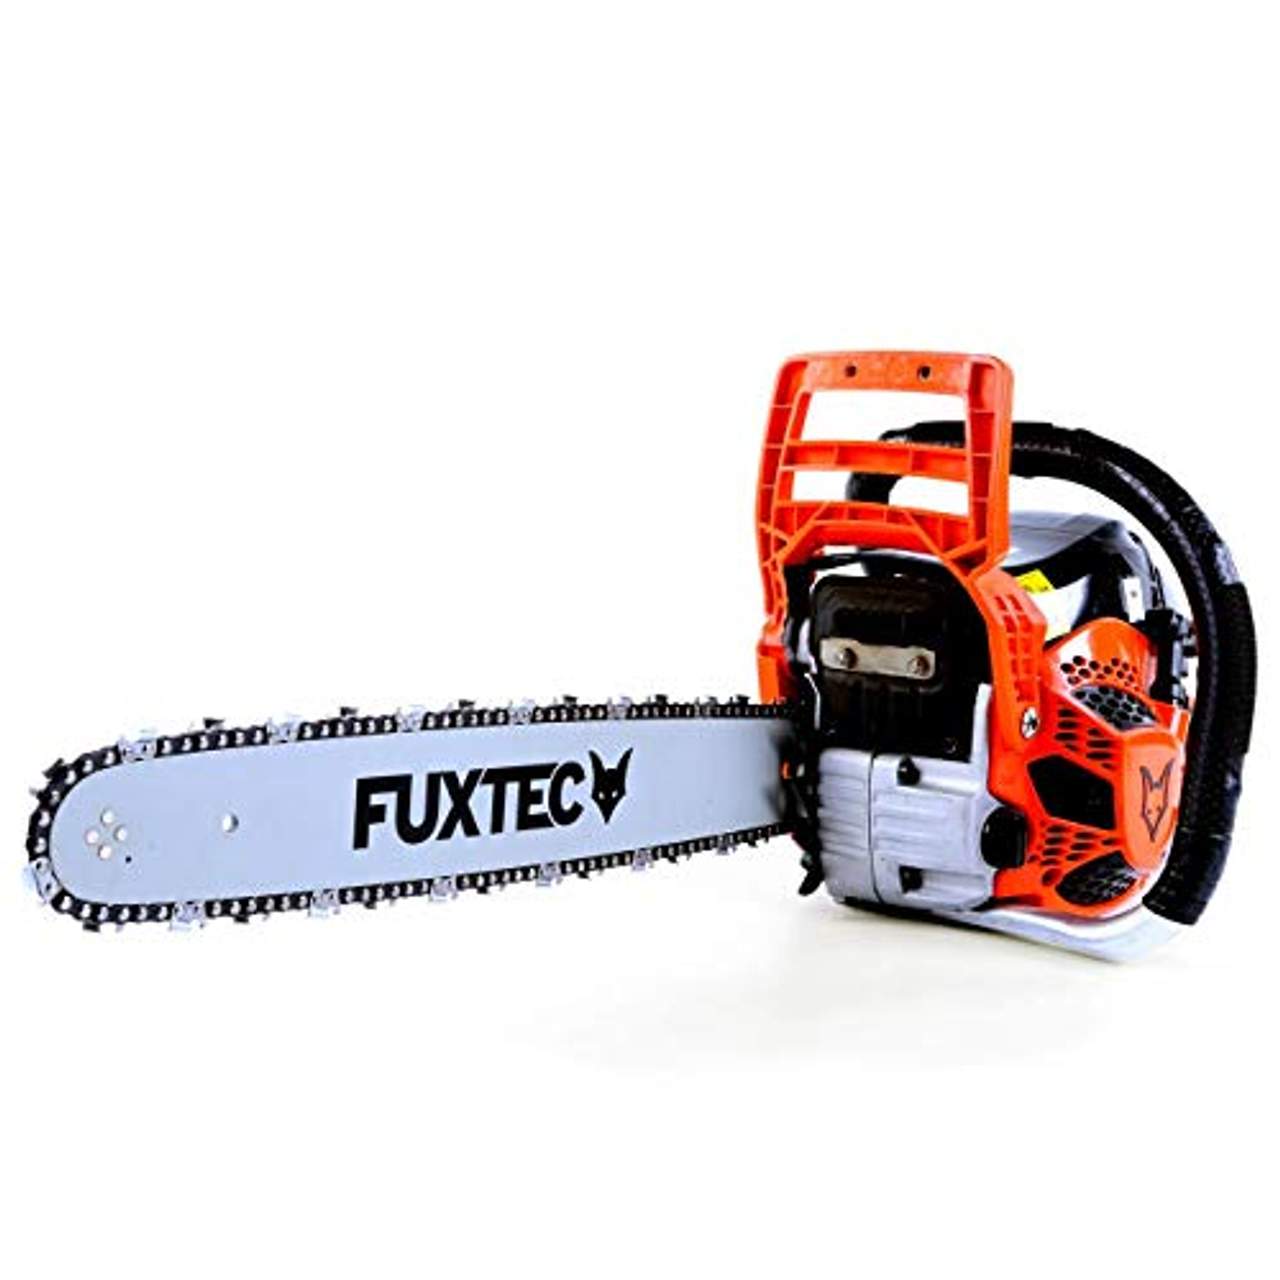 Fuxtec  FX-KS162 